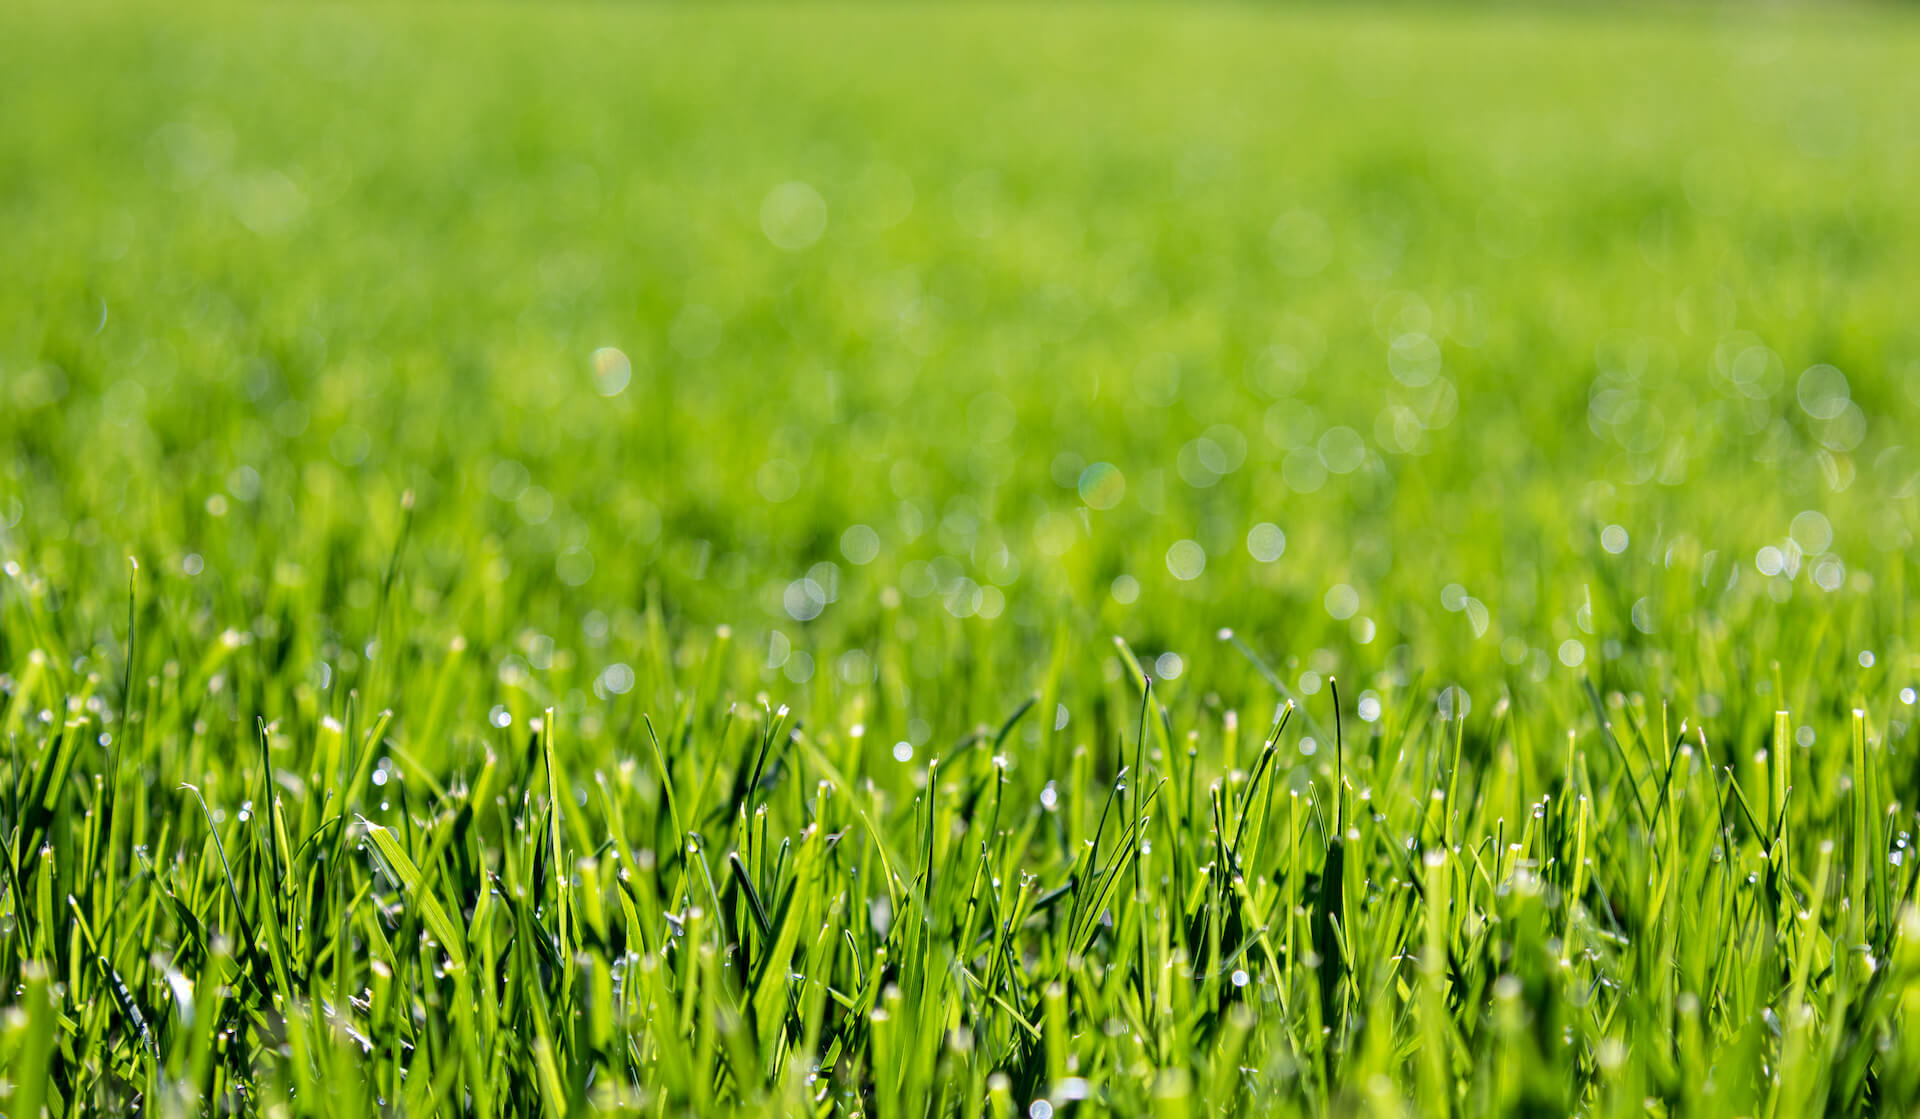 Jak wygląda zakładanie trawnika na wiosnę krok po kroku?